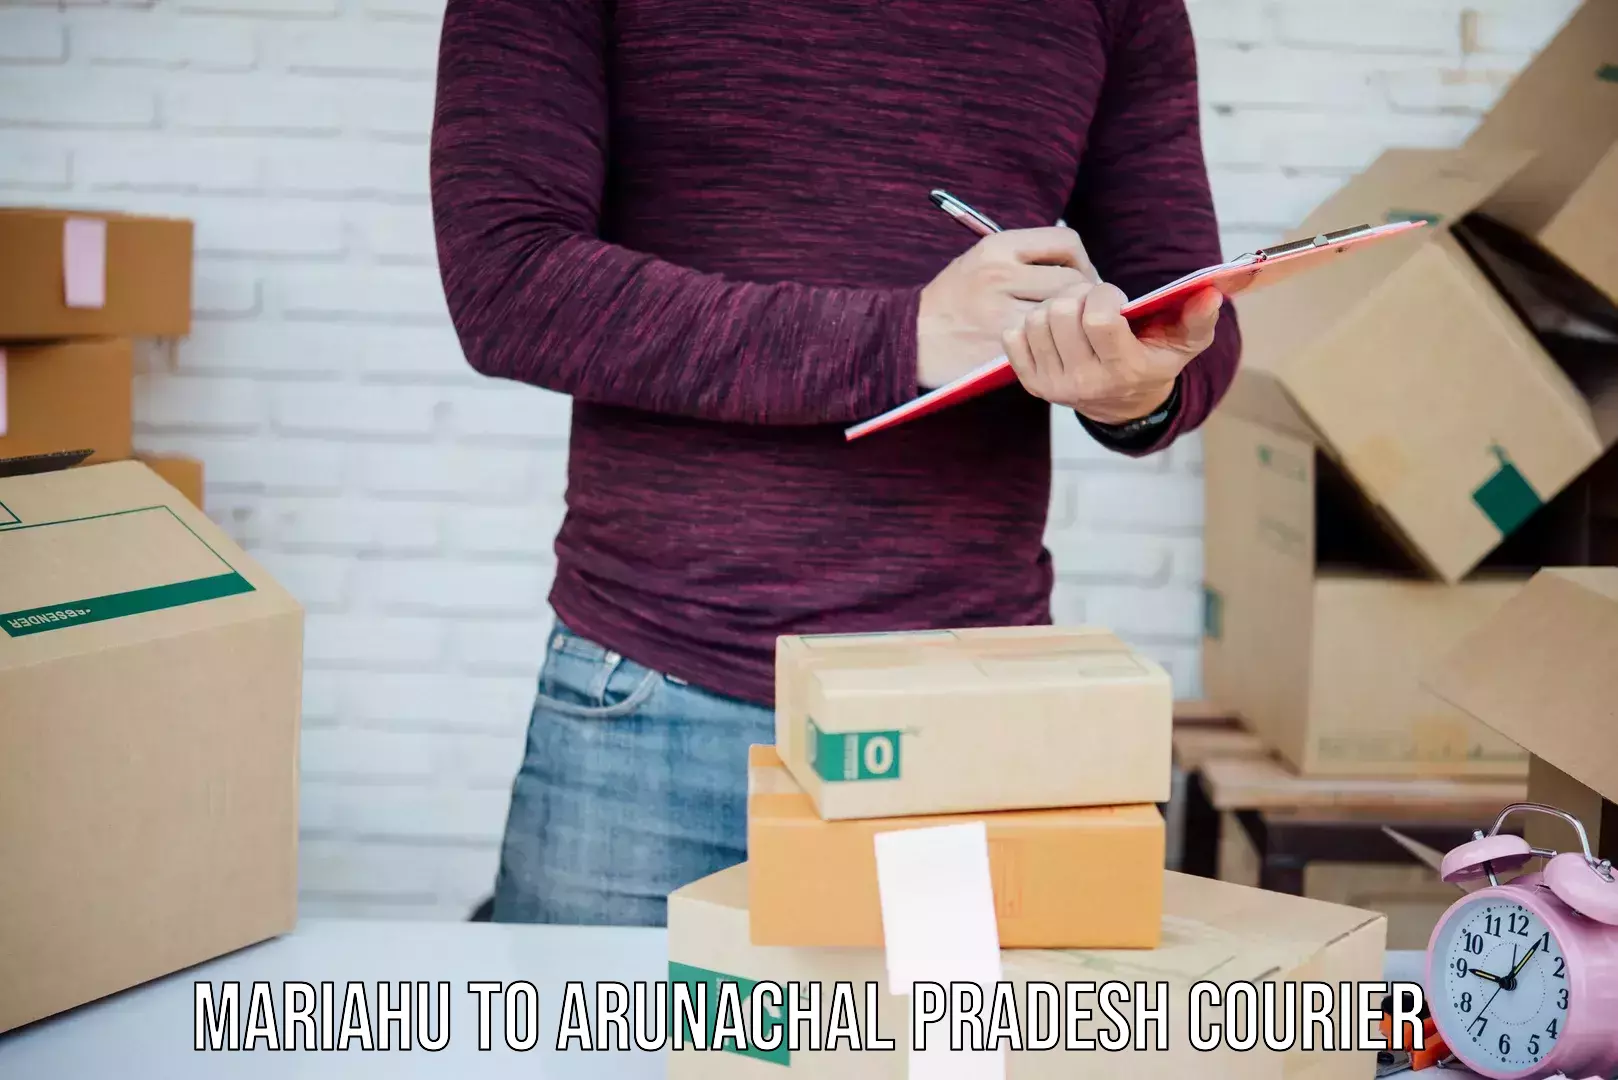 Secure packaging Mariahu to Arunachal Pradesh